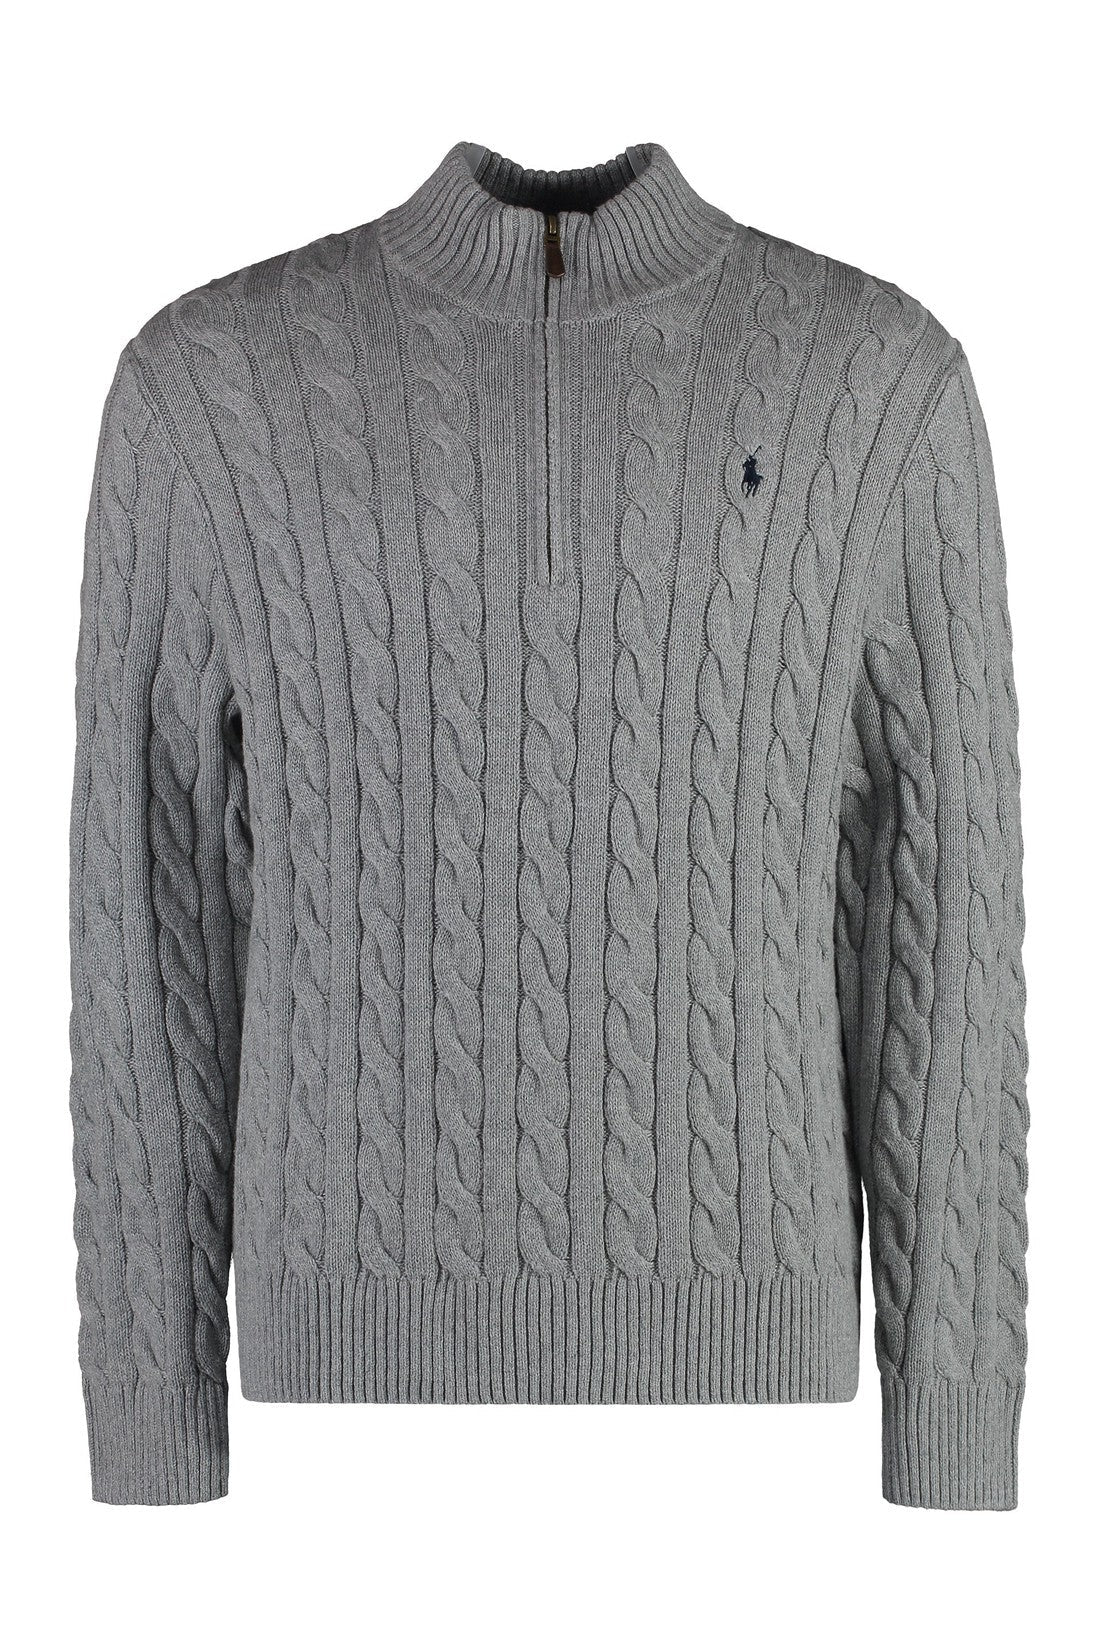 Polo Ralph Lauren-OUTLET-SALE-Cotton turtleneck sweater-ARCHIVIST